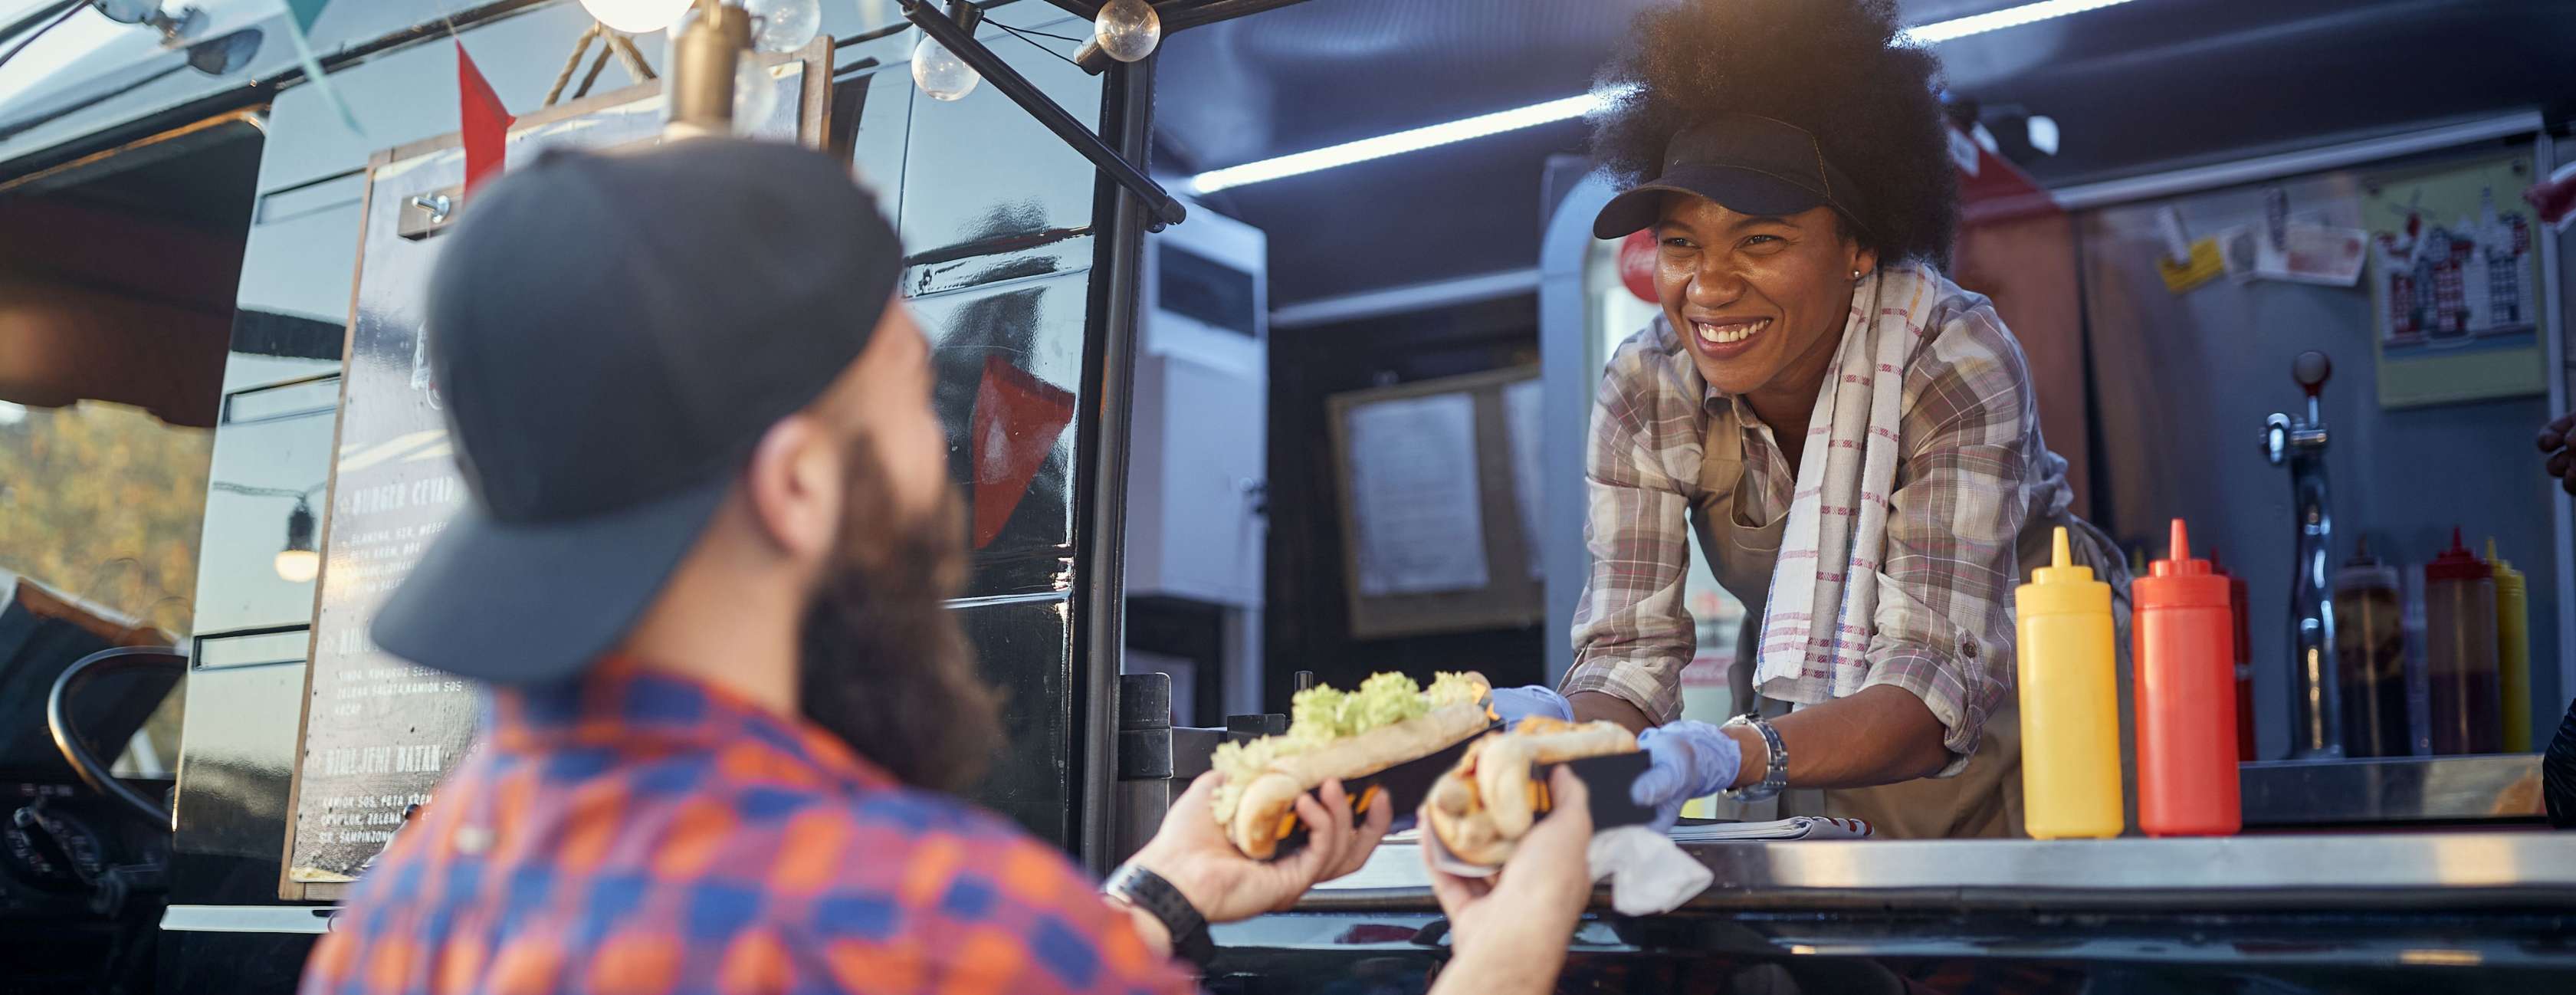 Eine Foodtruck-Betreiberin reicht einem Kunden lächelnd Hotdogs aus Ihrem Truck heraus.